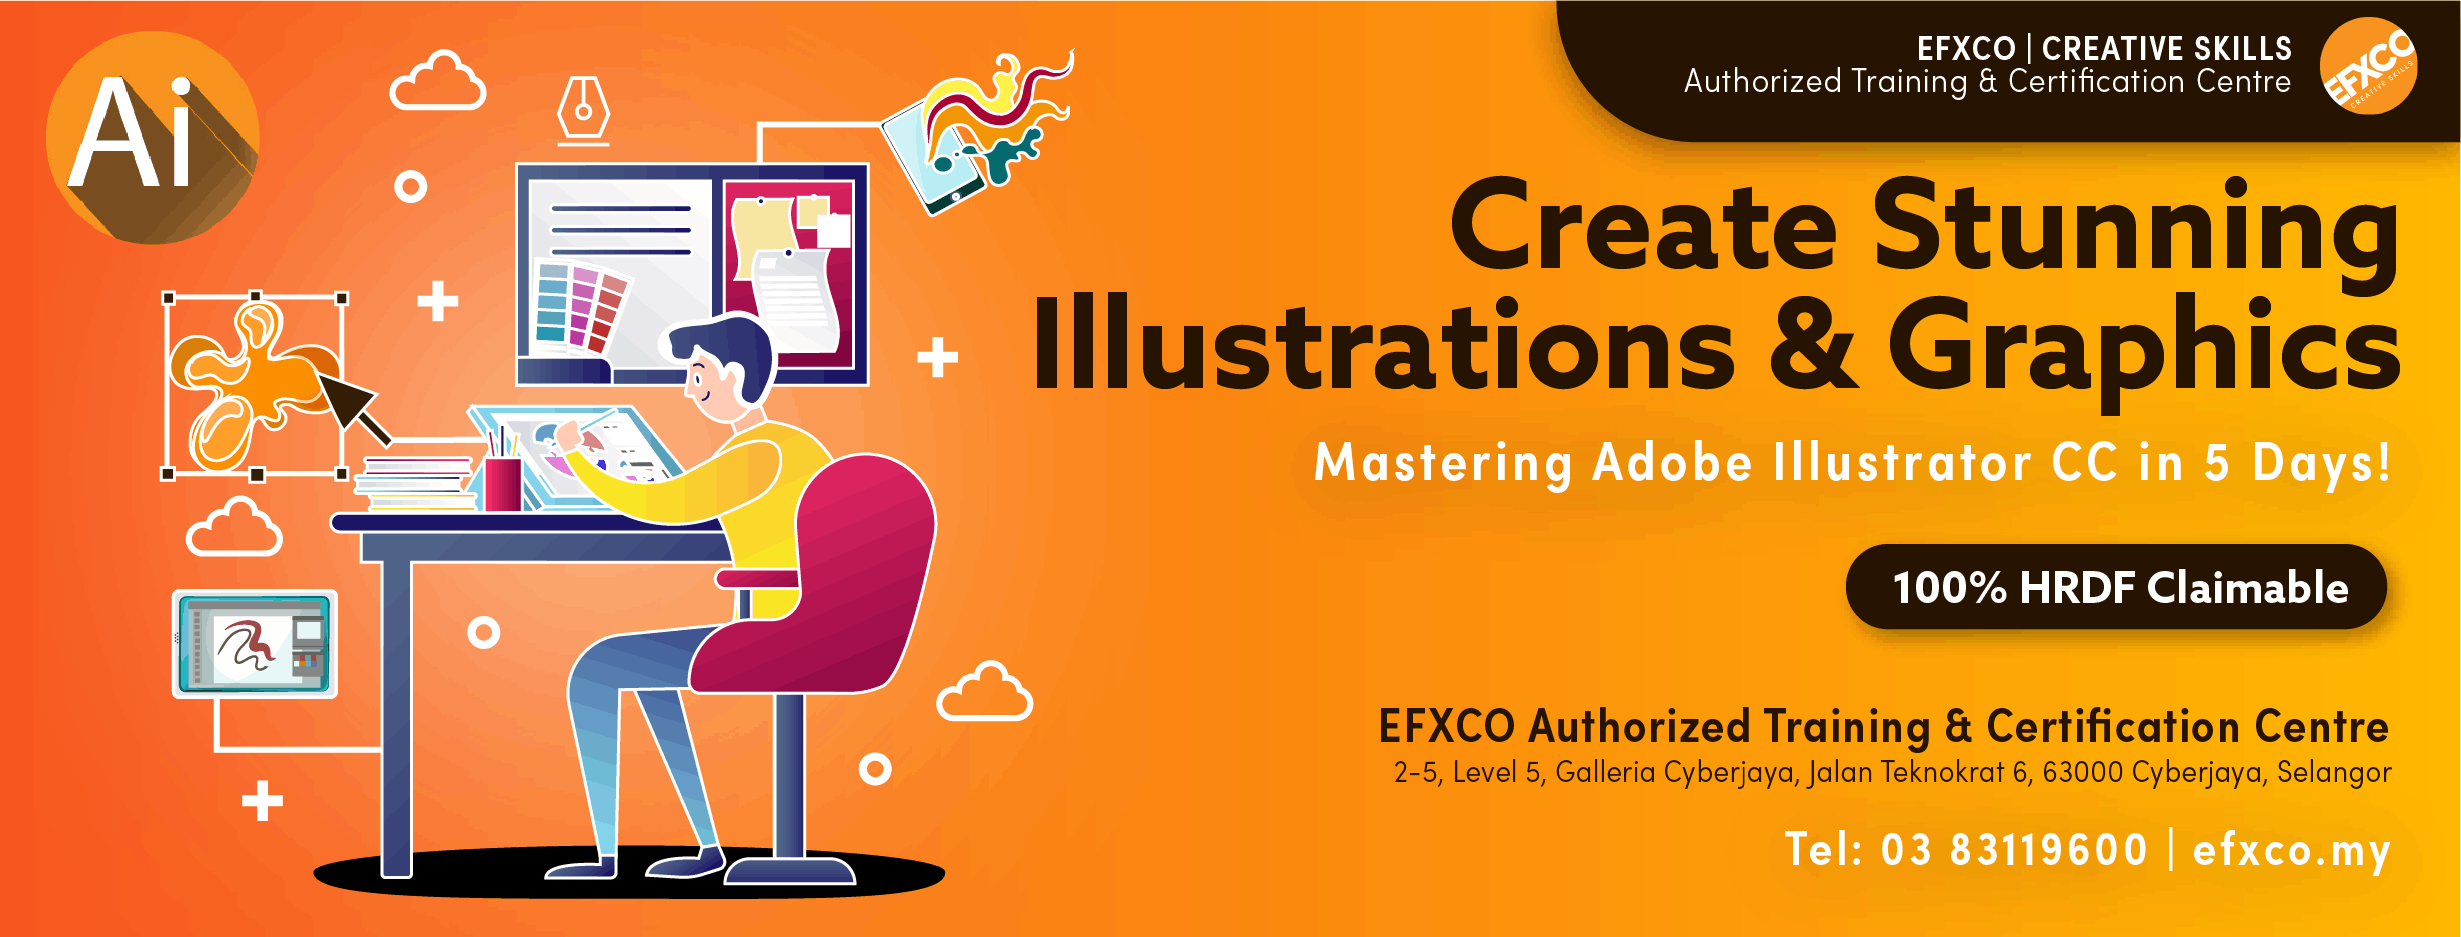 AUTHORISED TRAINING: Mastering Adobe Illustrator CC in 5 days!